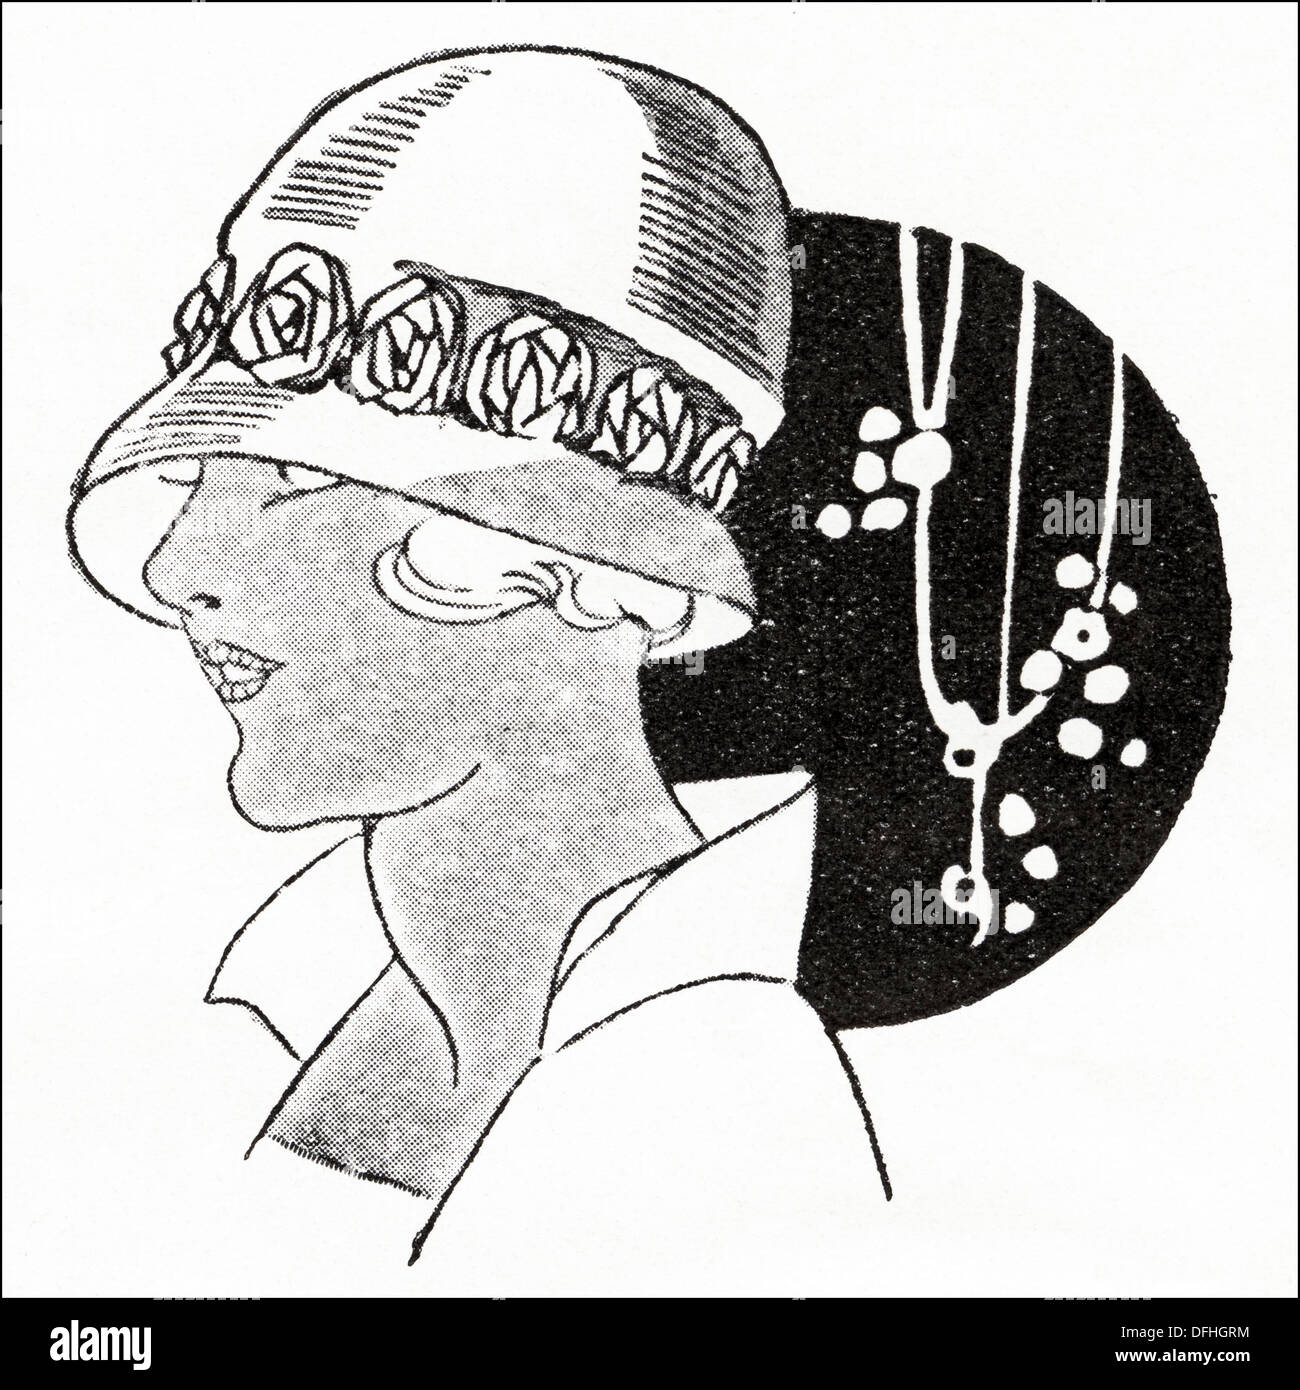 La mode garçonne des années 1920. Mail Order hat, étroite tagel cloche avec un bord de champignons et garnie de télévision des rosettes de ruban de velours. Illustration originale d'un magazine de mode féminine vers 1924 Banque D'Images